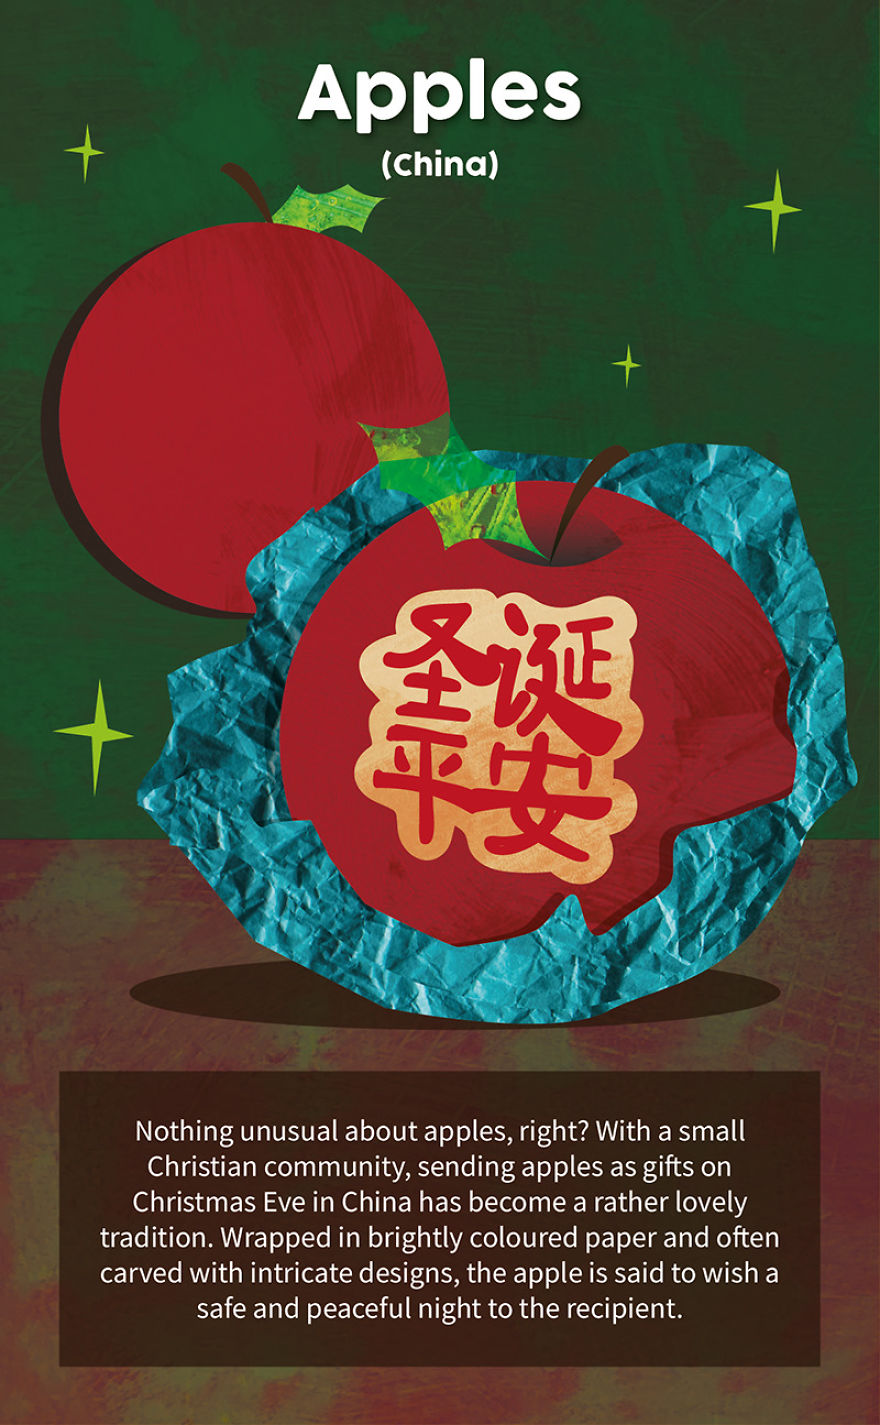 Christmas Eve Apples - China